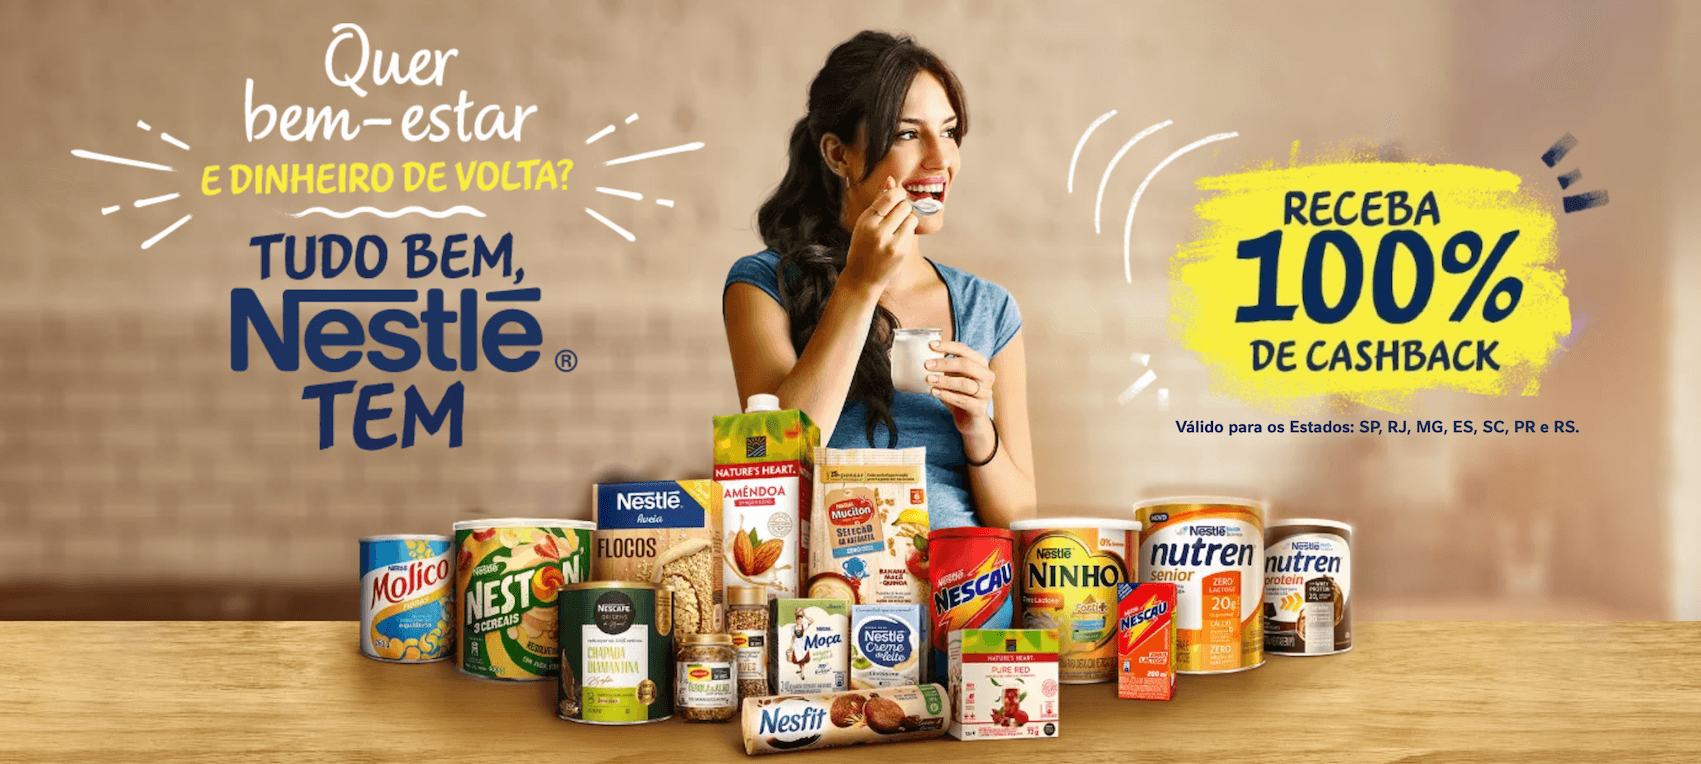  Nestlé tặng sản phẩm miễn phí cho khách hàng. Kiểm tra làm thế nào để có được nó!